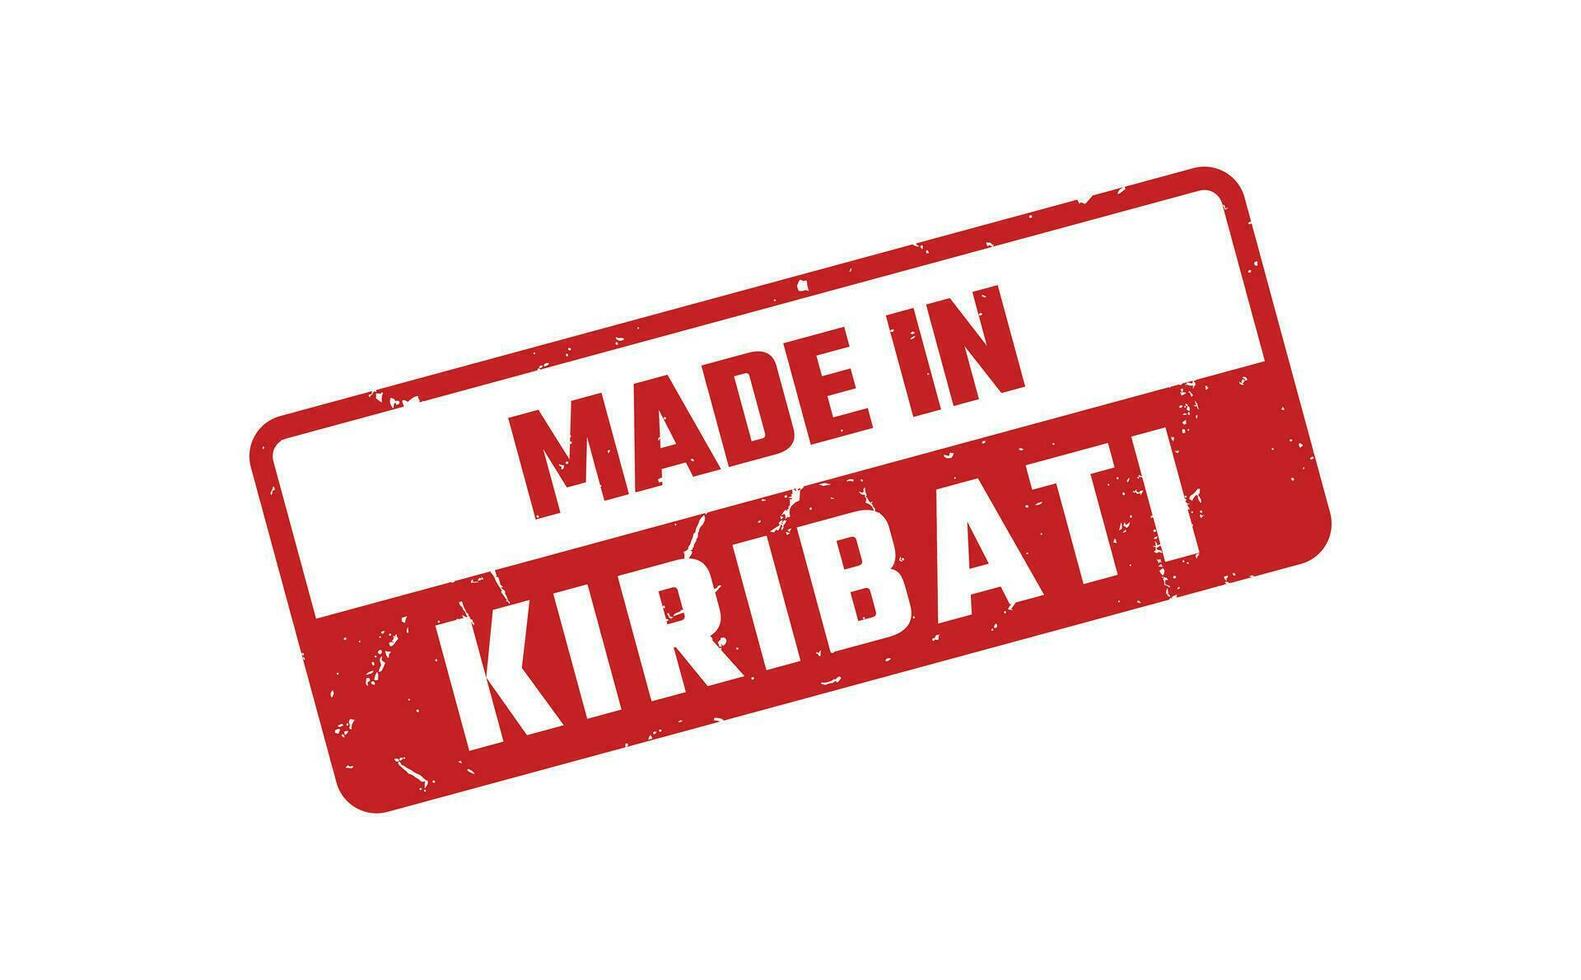 Made In Kiribati Rubber Stamp vector